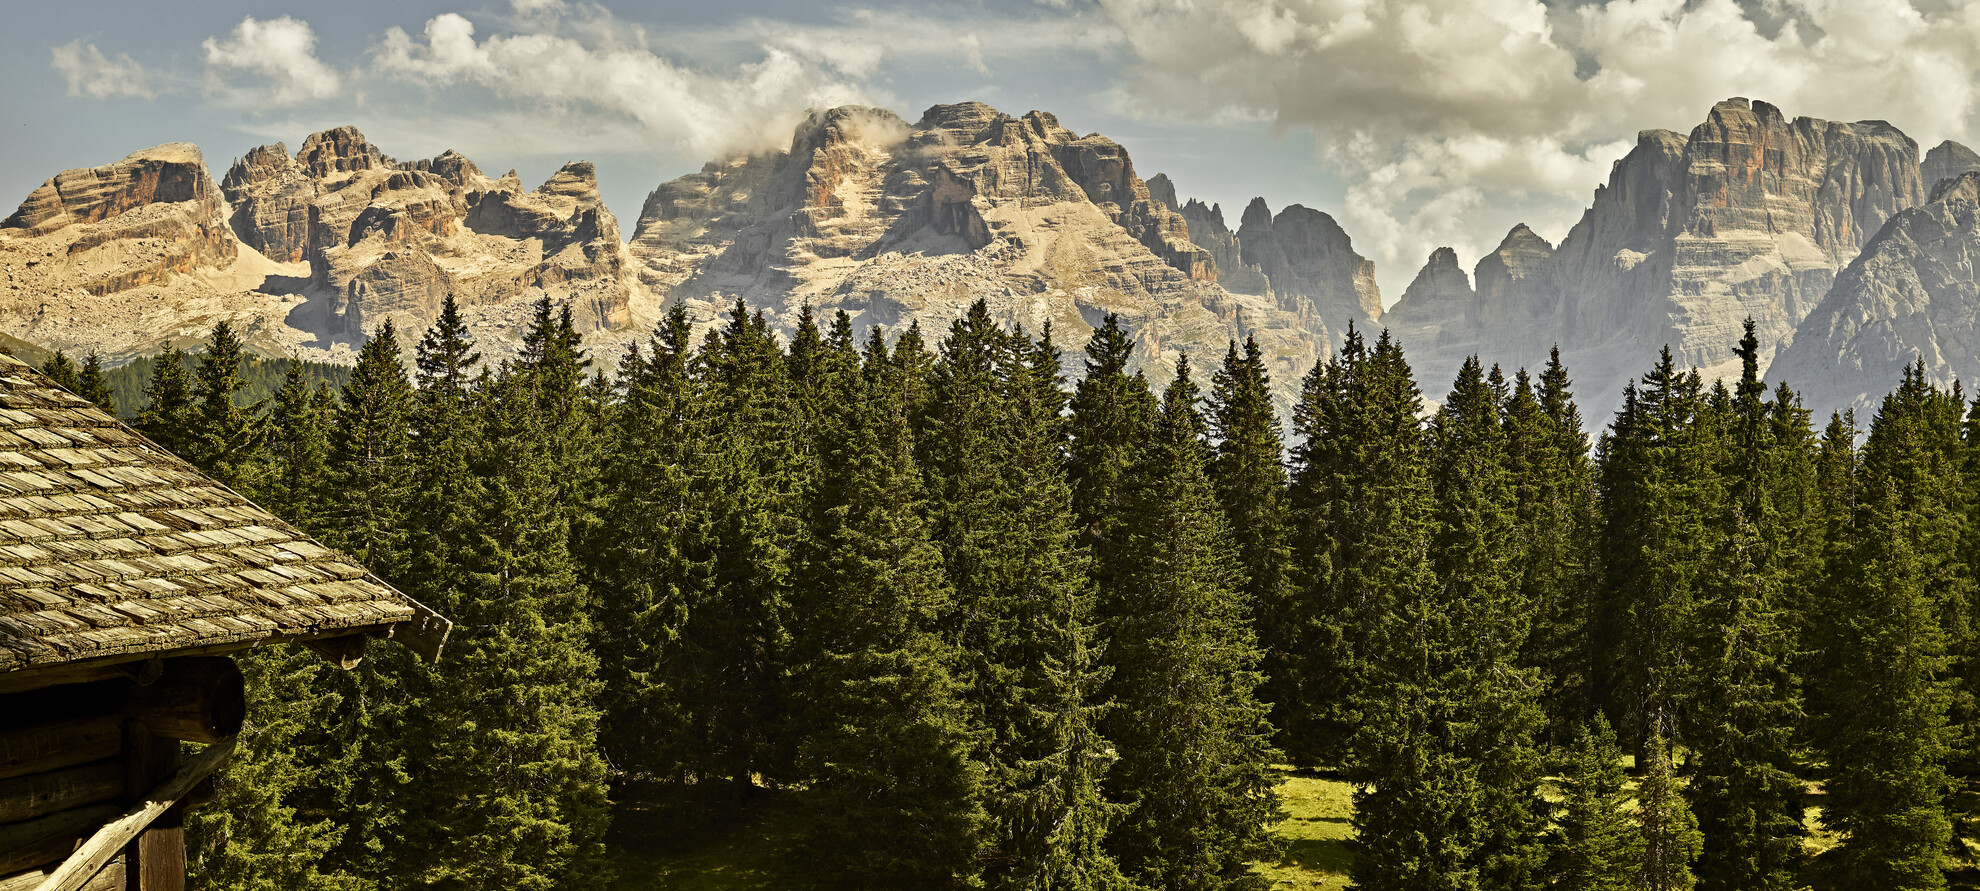 Val Rendena - Panoramic view of the Brenta Dolomites